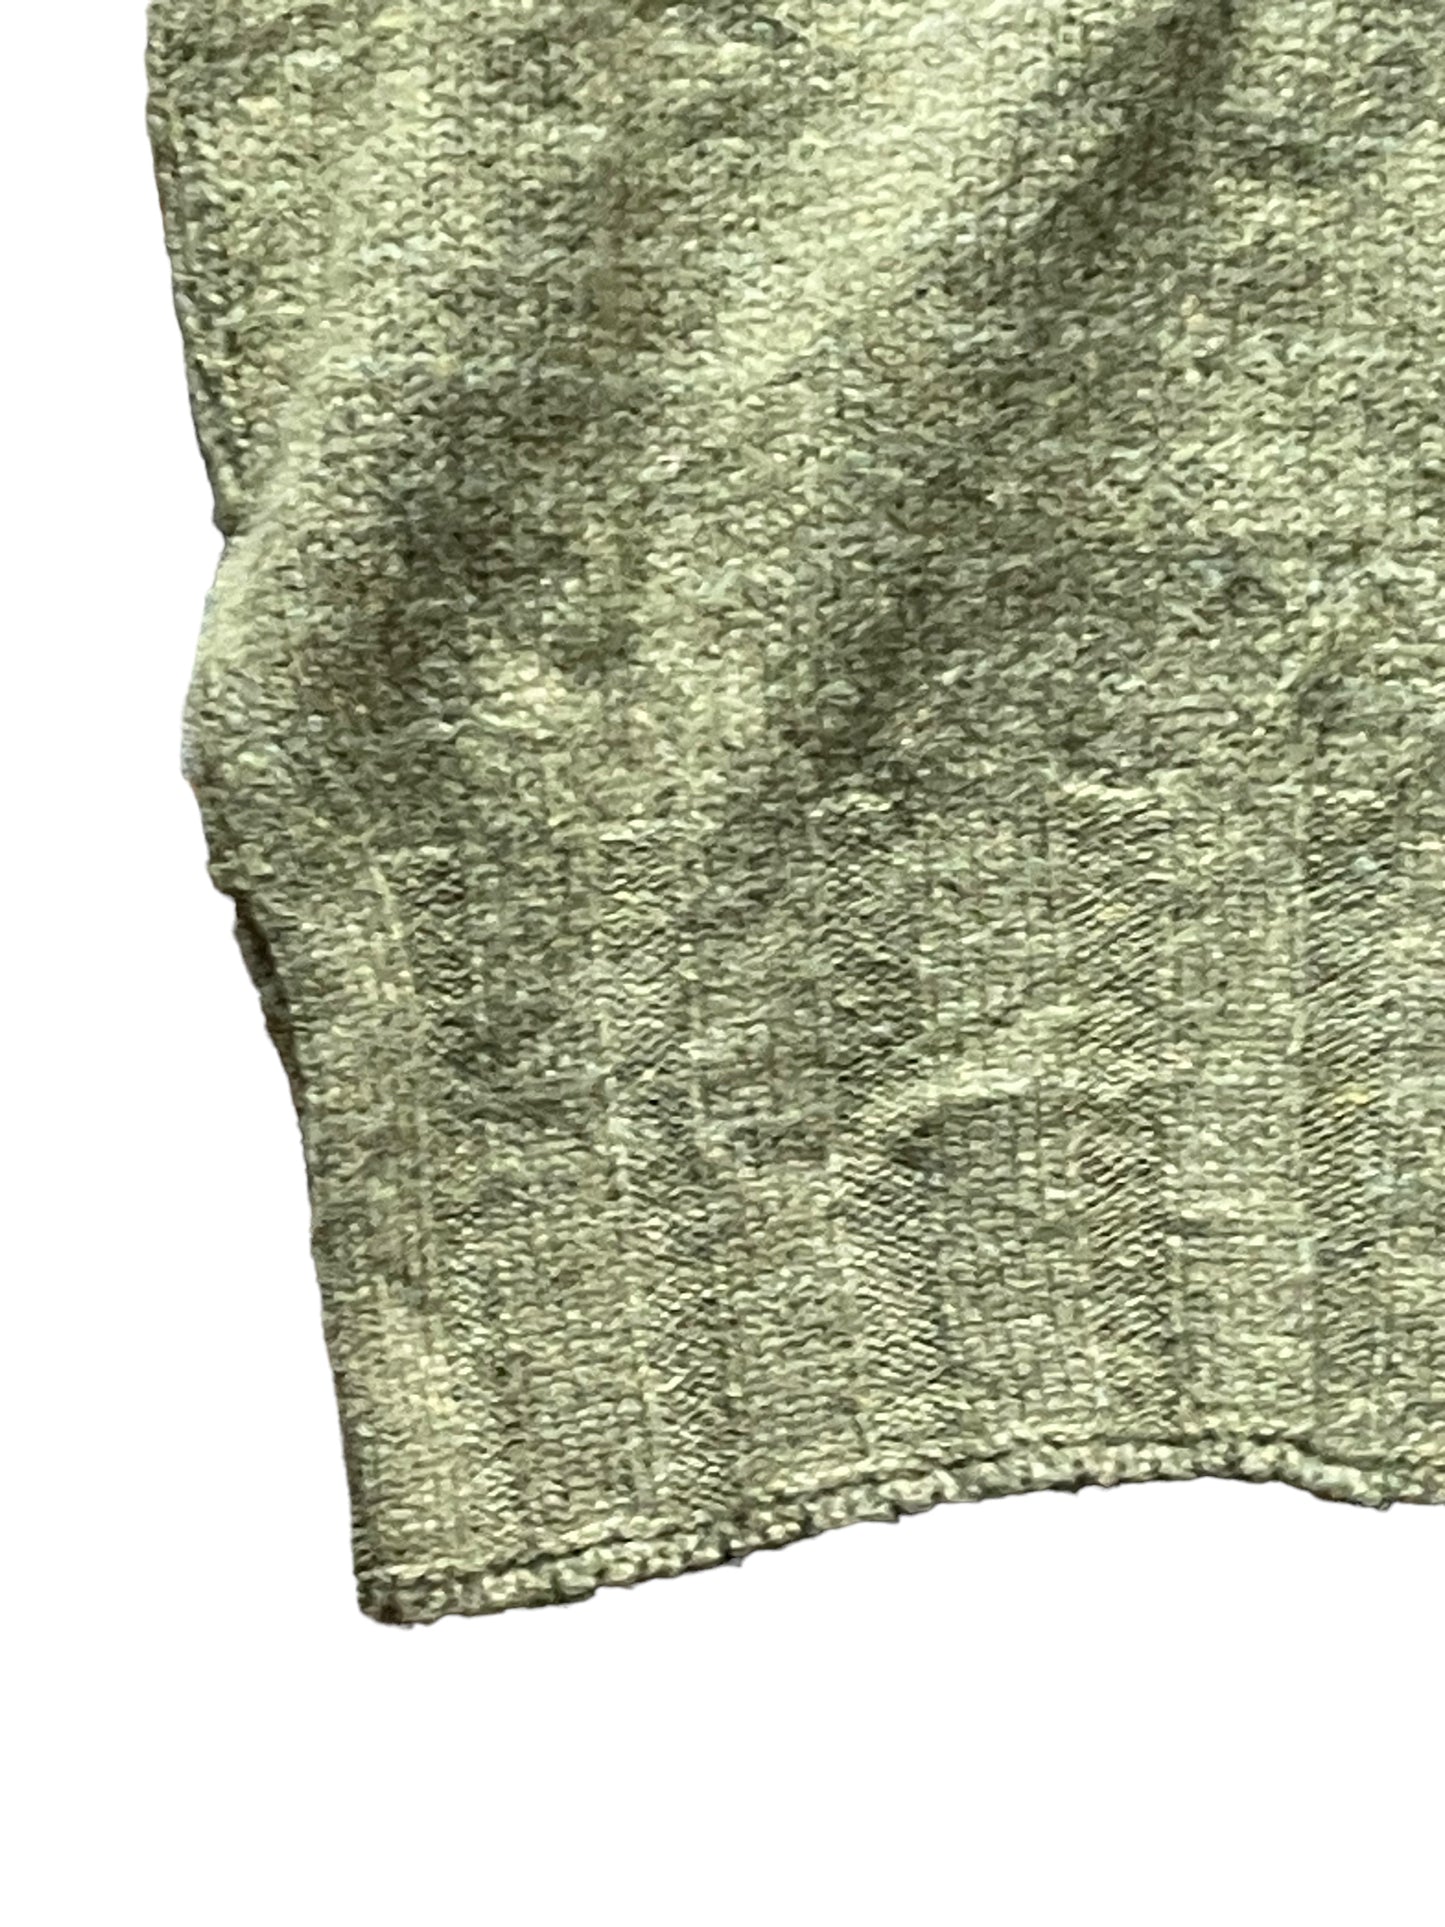 Vintage 1960s Green Wool Sweater Vest SZ L | Barn Owl Sweaters | Seattle Vintage